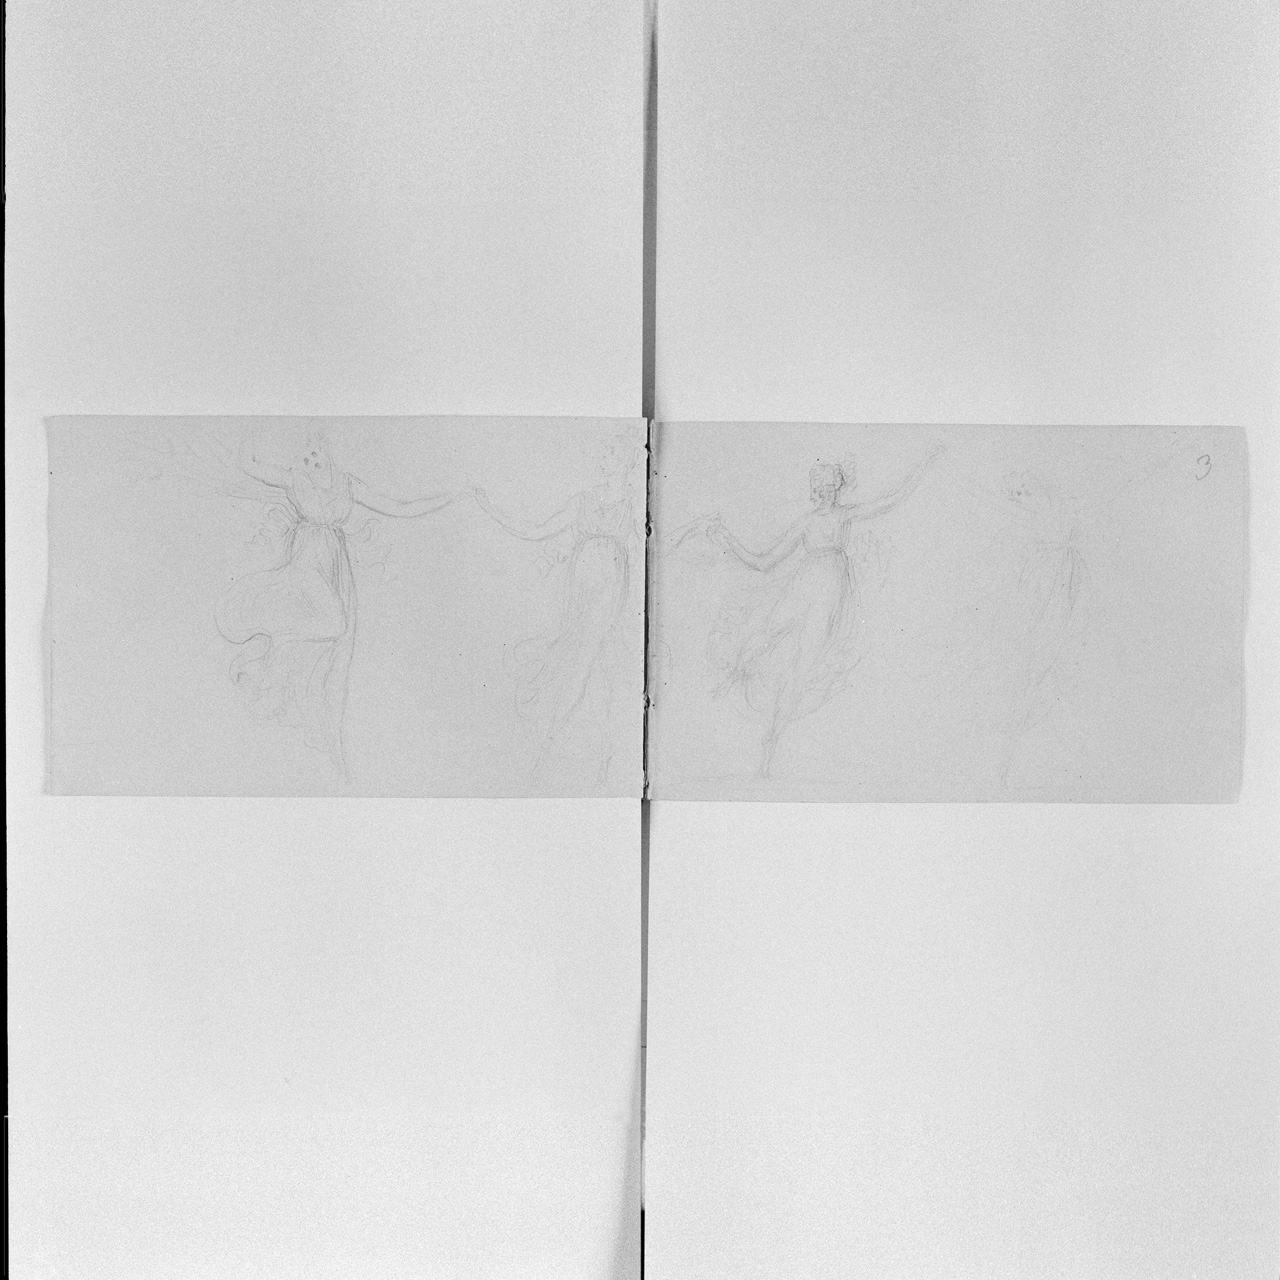 Quattro danzatrici che si tengono per mano (taccuino di disegni) di Canova Antonio (sec. XIX)